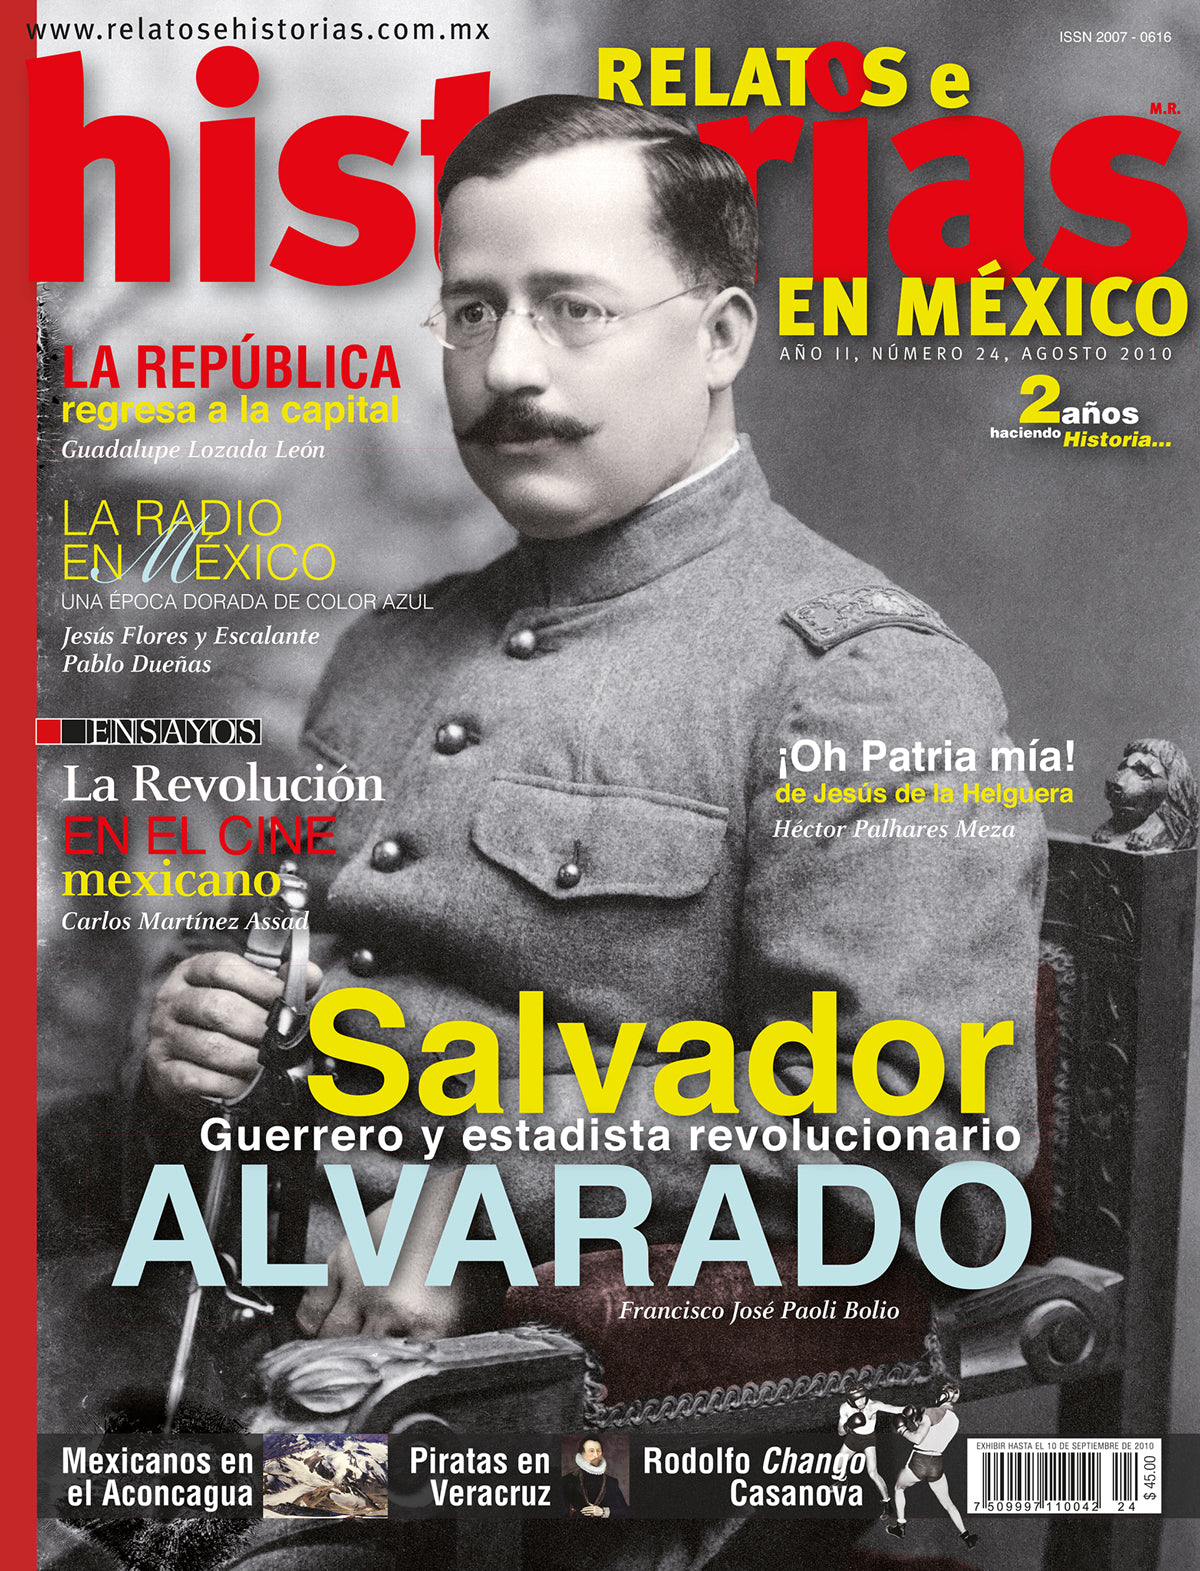 Salvador Alvarado. Guerrero y estadista revolucionario